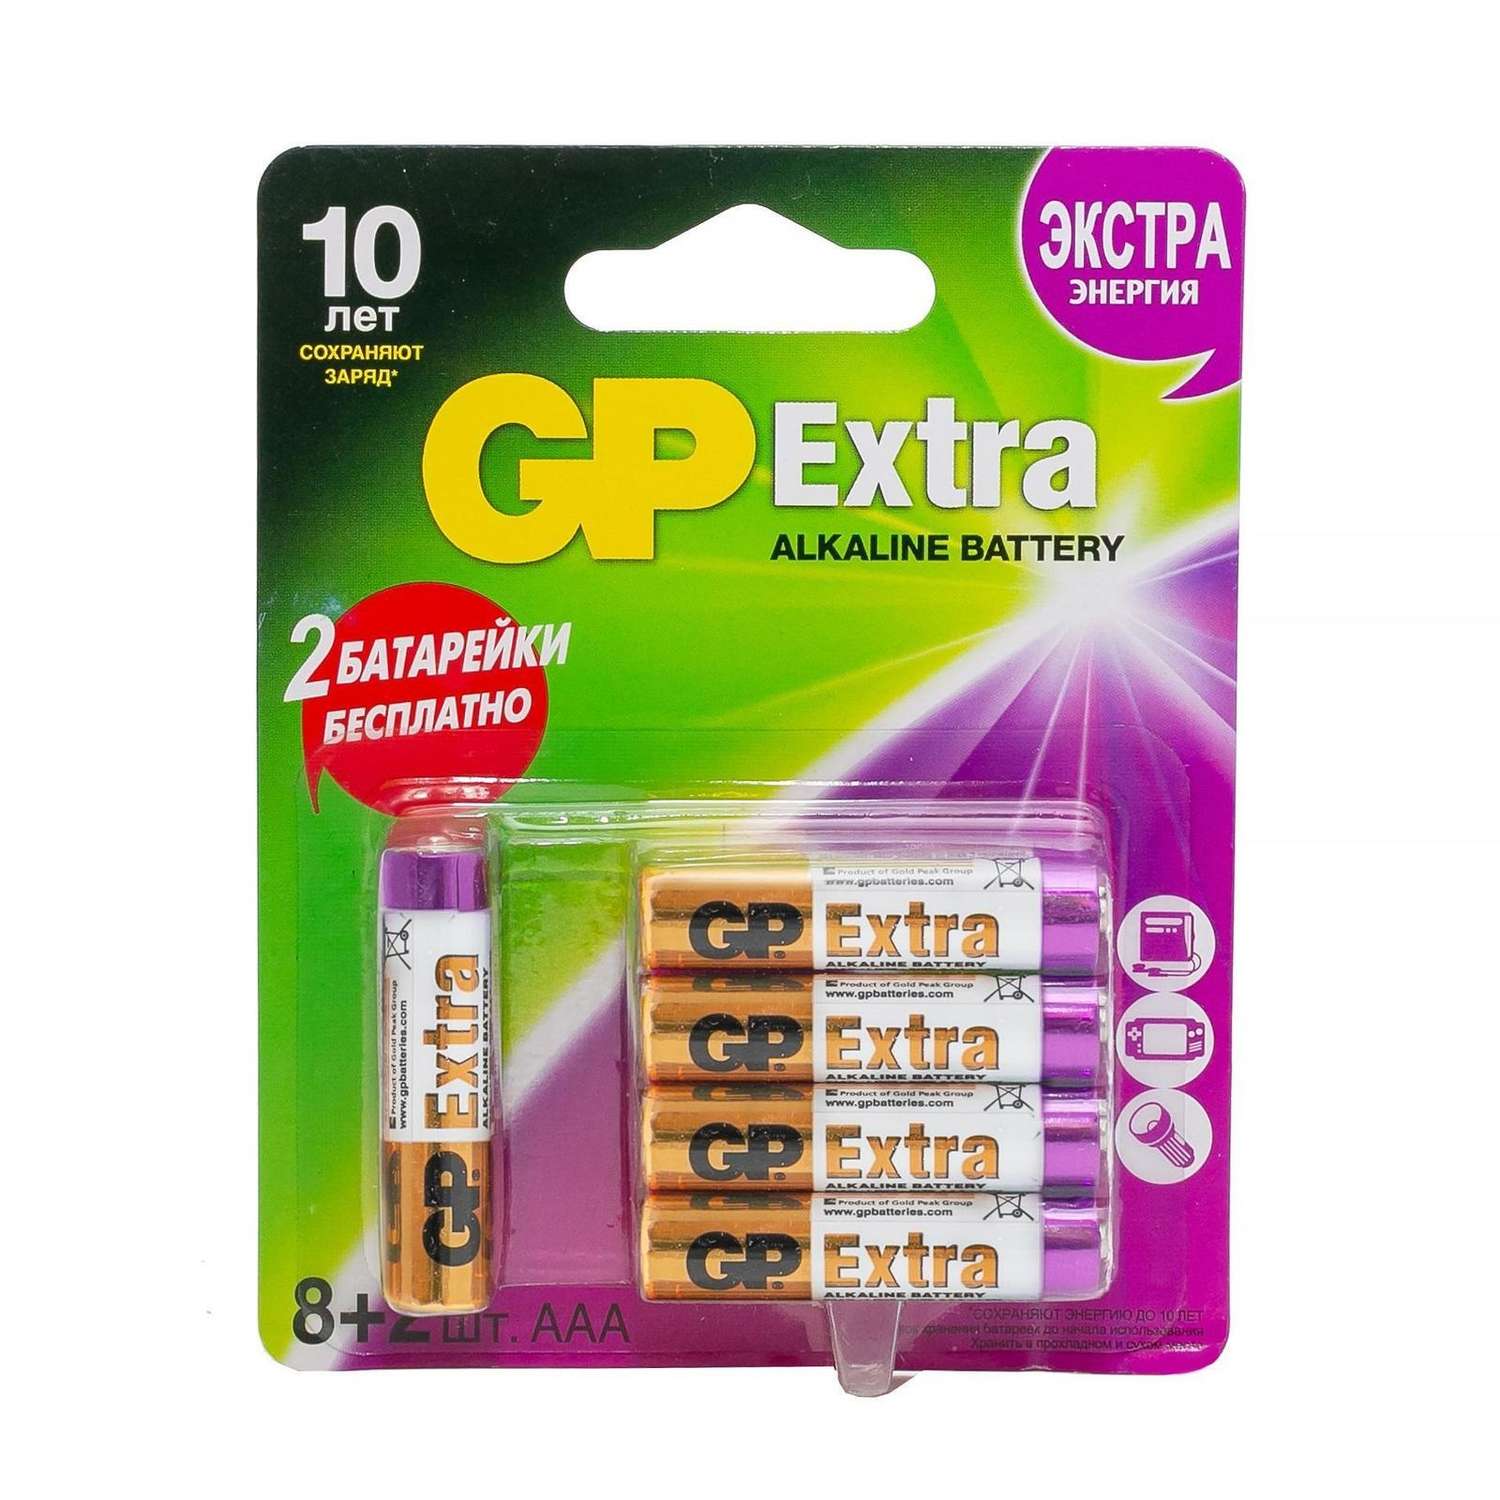 Набор батареек ААА GP пальчиковые 10 штук в упаковке (8+2 в подарок) - фото 2